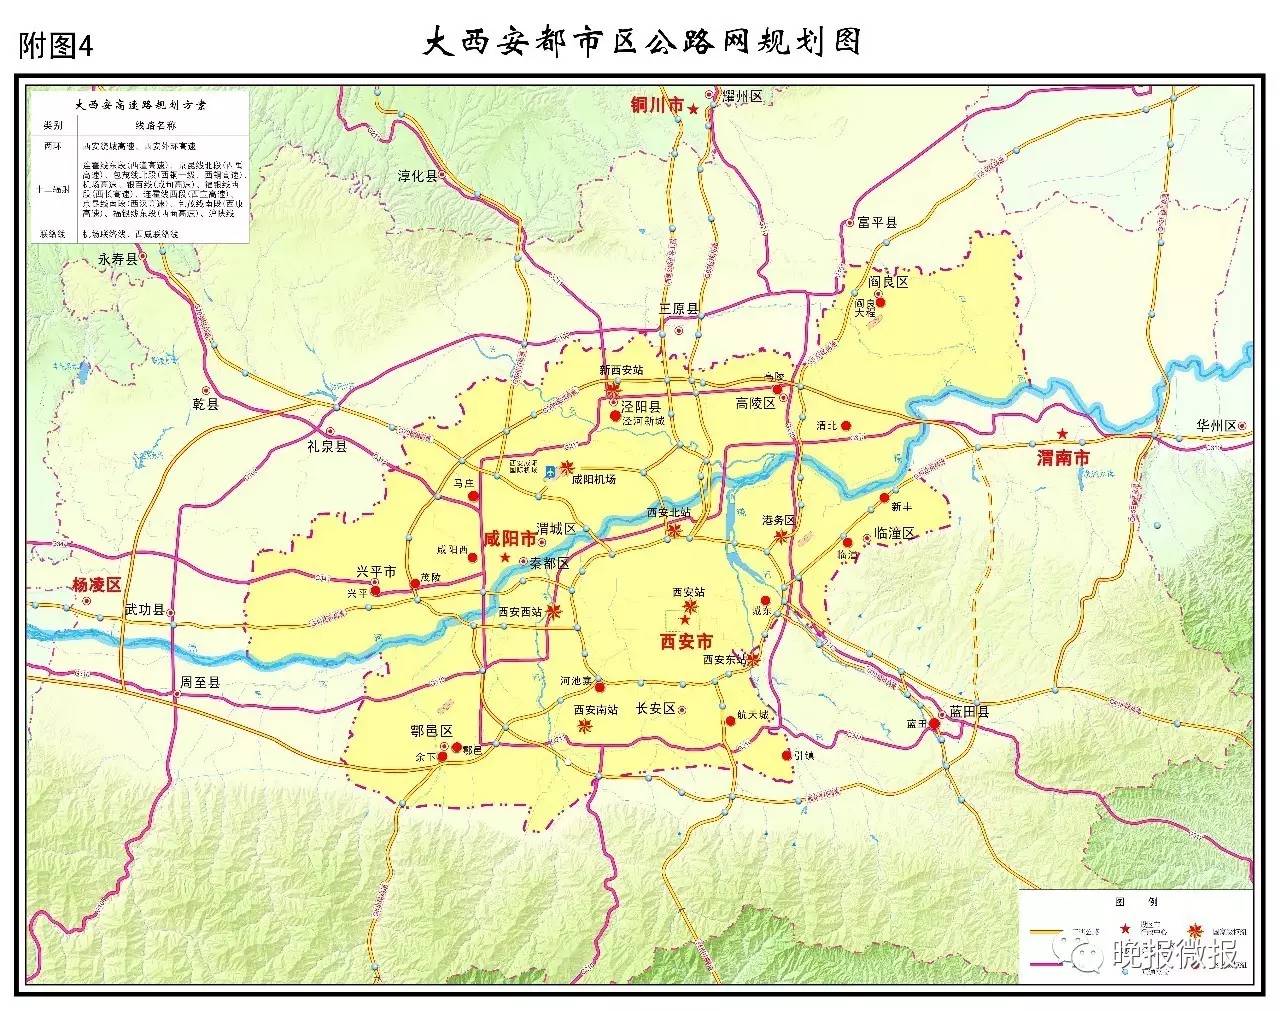 76万平方公里,其中重点区域为西安市城区,咸阳市城区和西咸新区,总